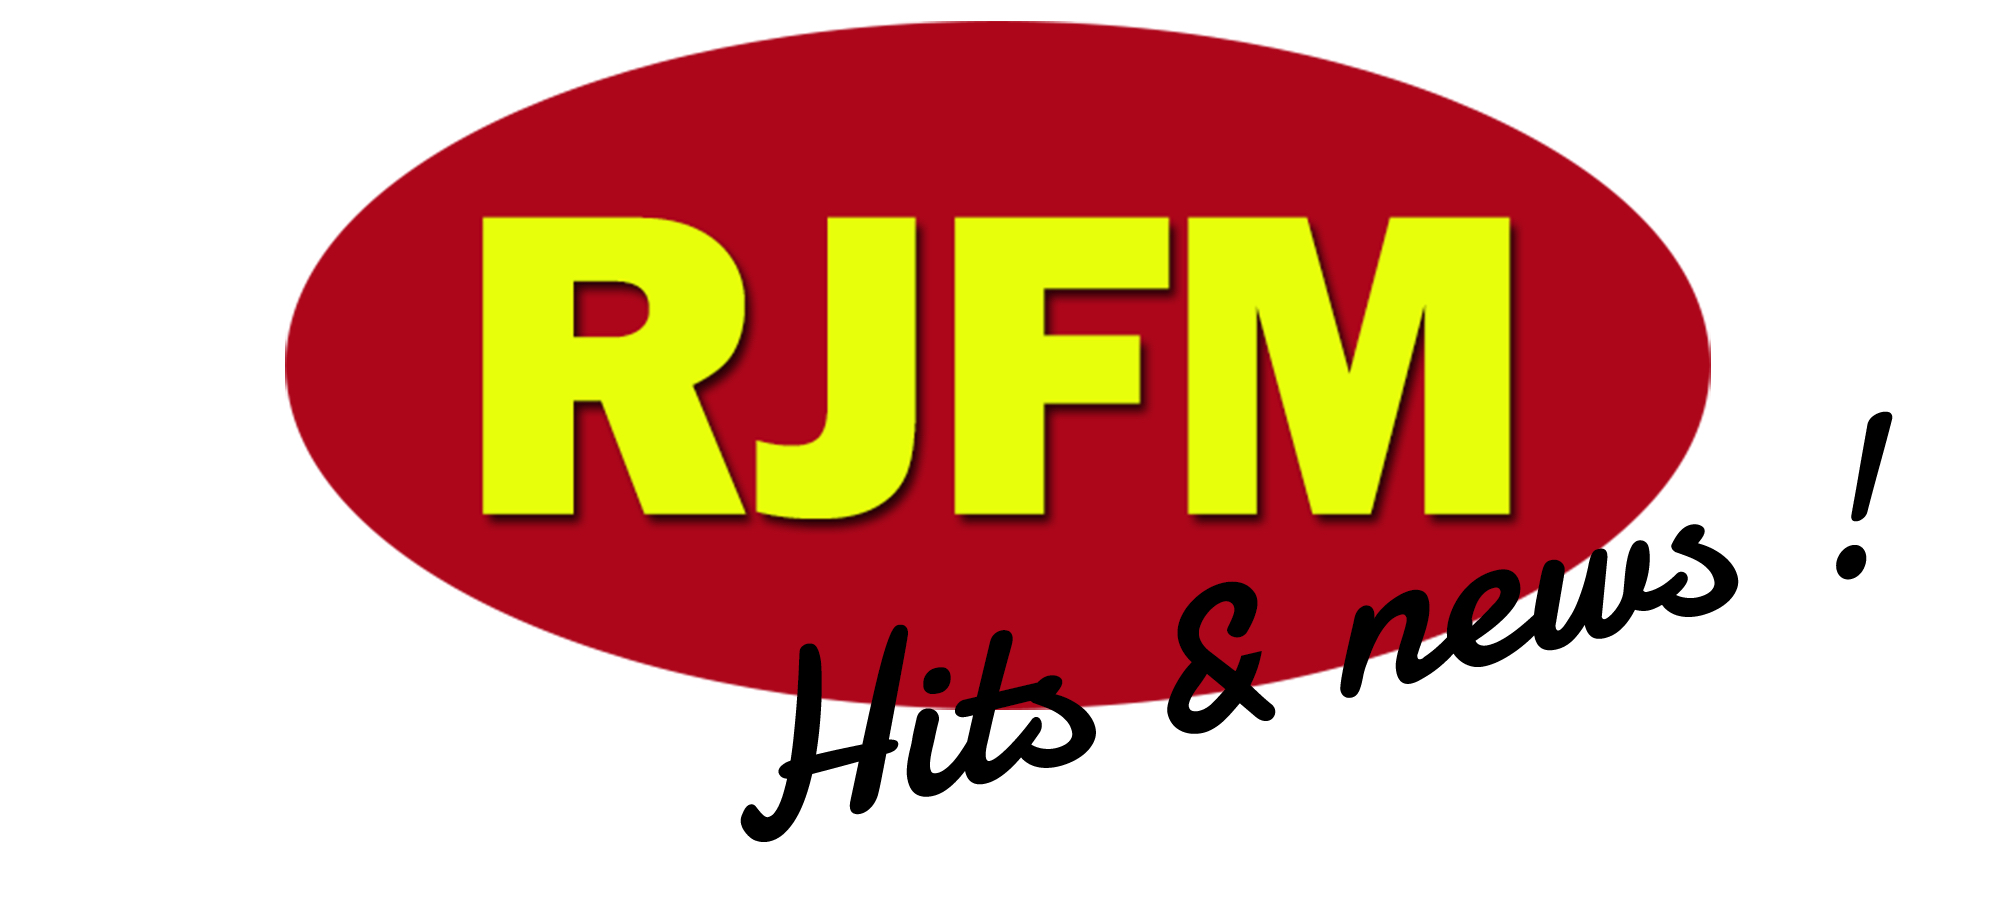 Covid-19 : RJFM, une radio associative active et solidaire sur son territoire